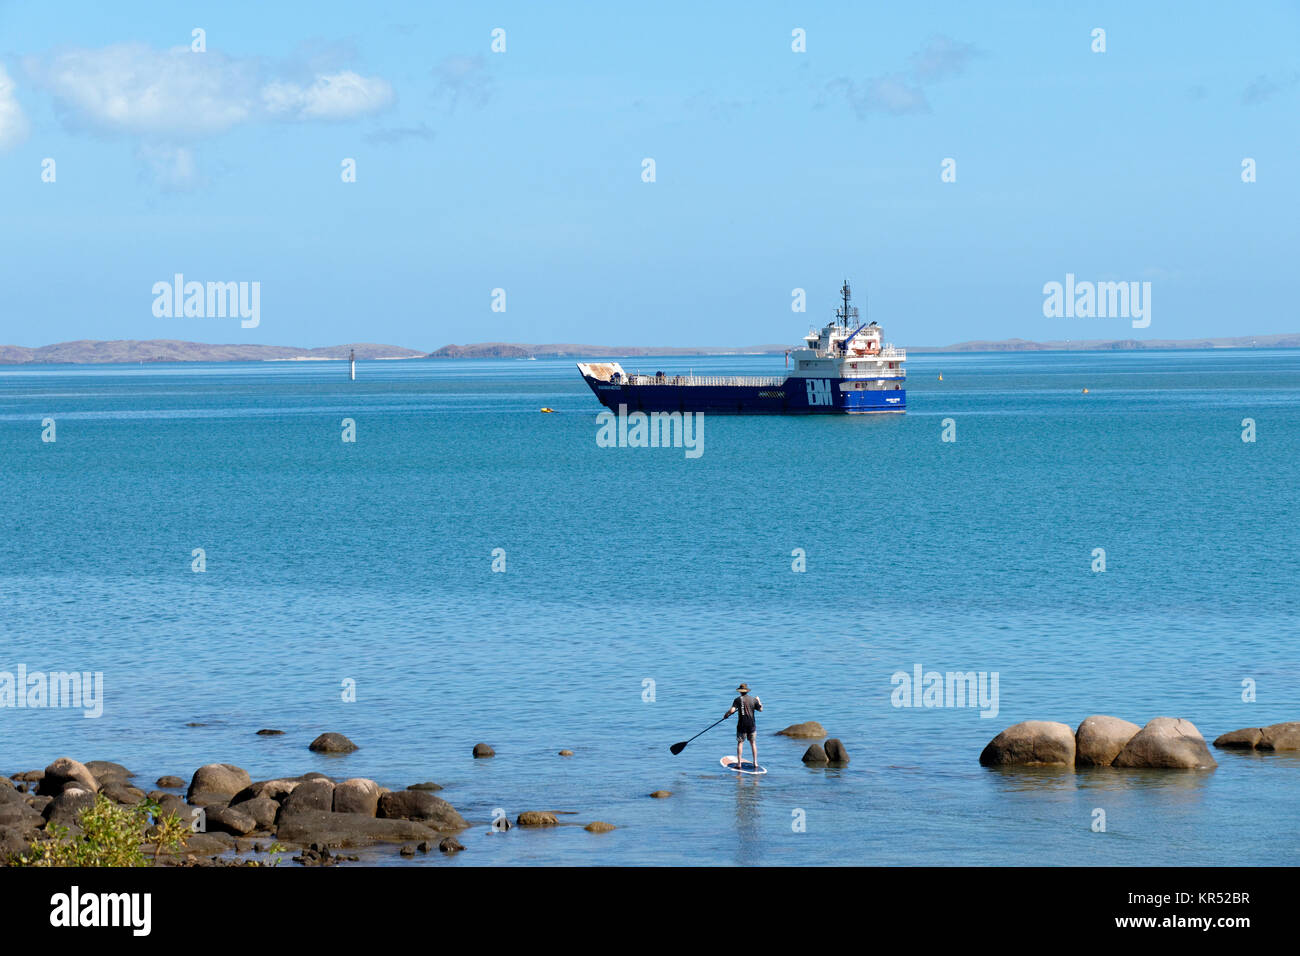 Uomo in piedi sulla scheda di racchetta con la barca in distanza, Dampier, Pilbara, Australia occidentale Foto Stock